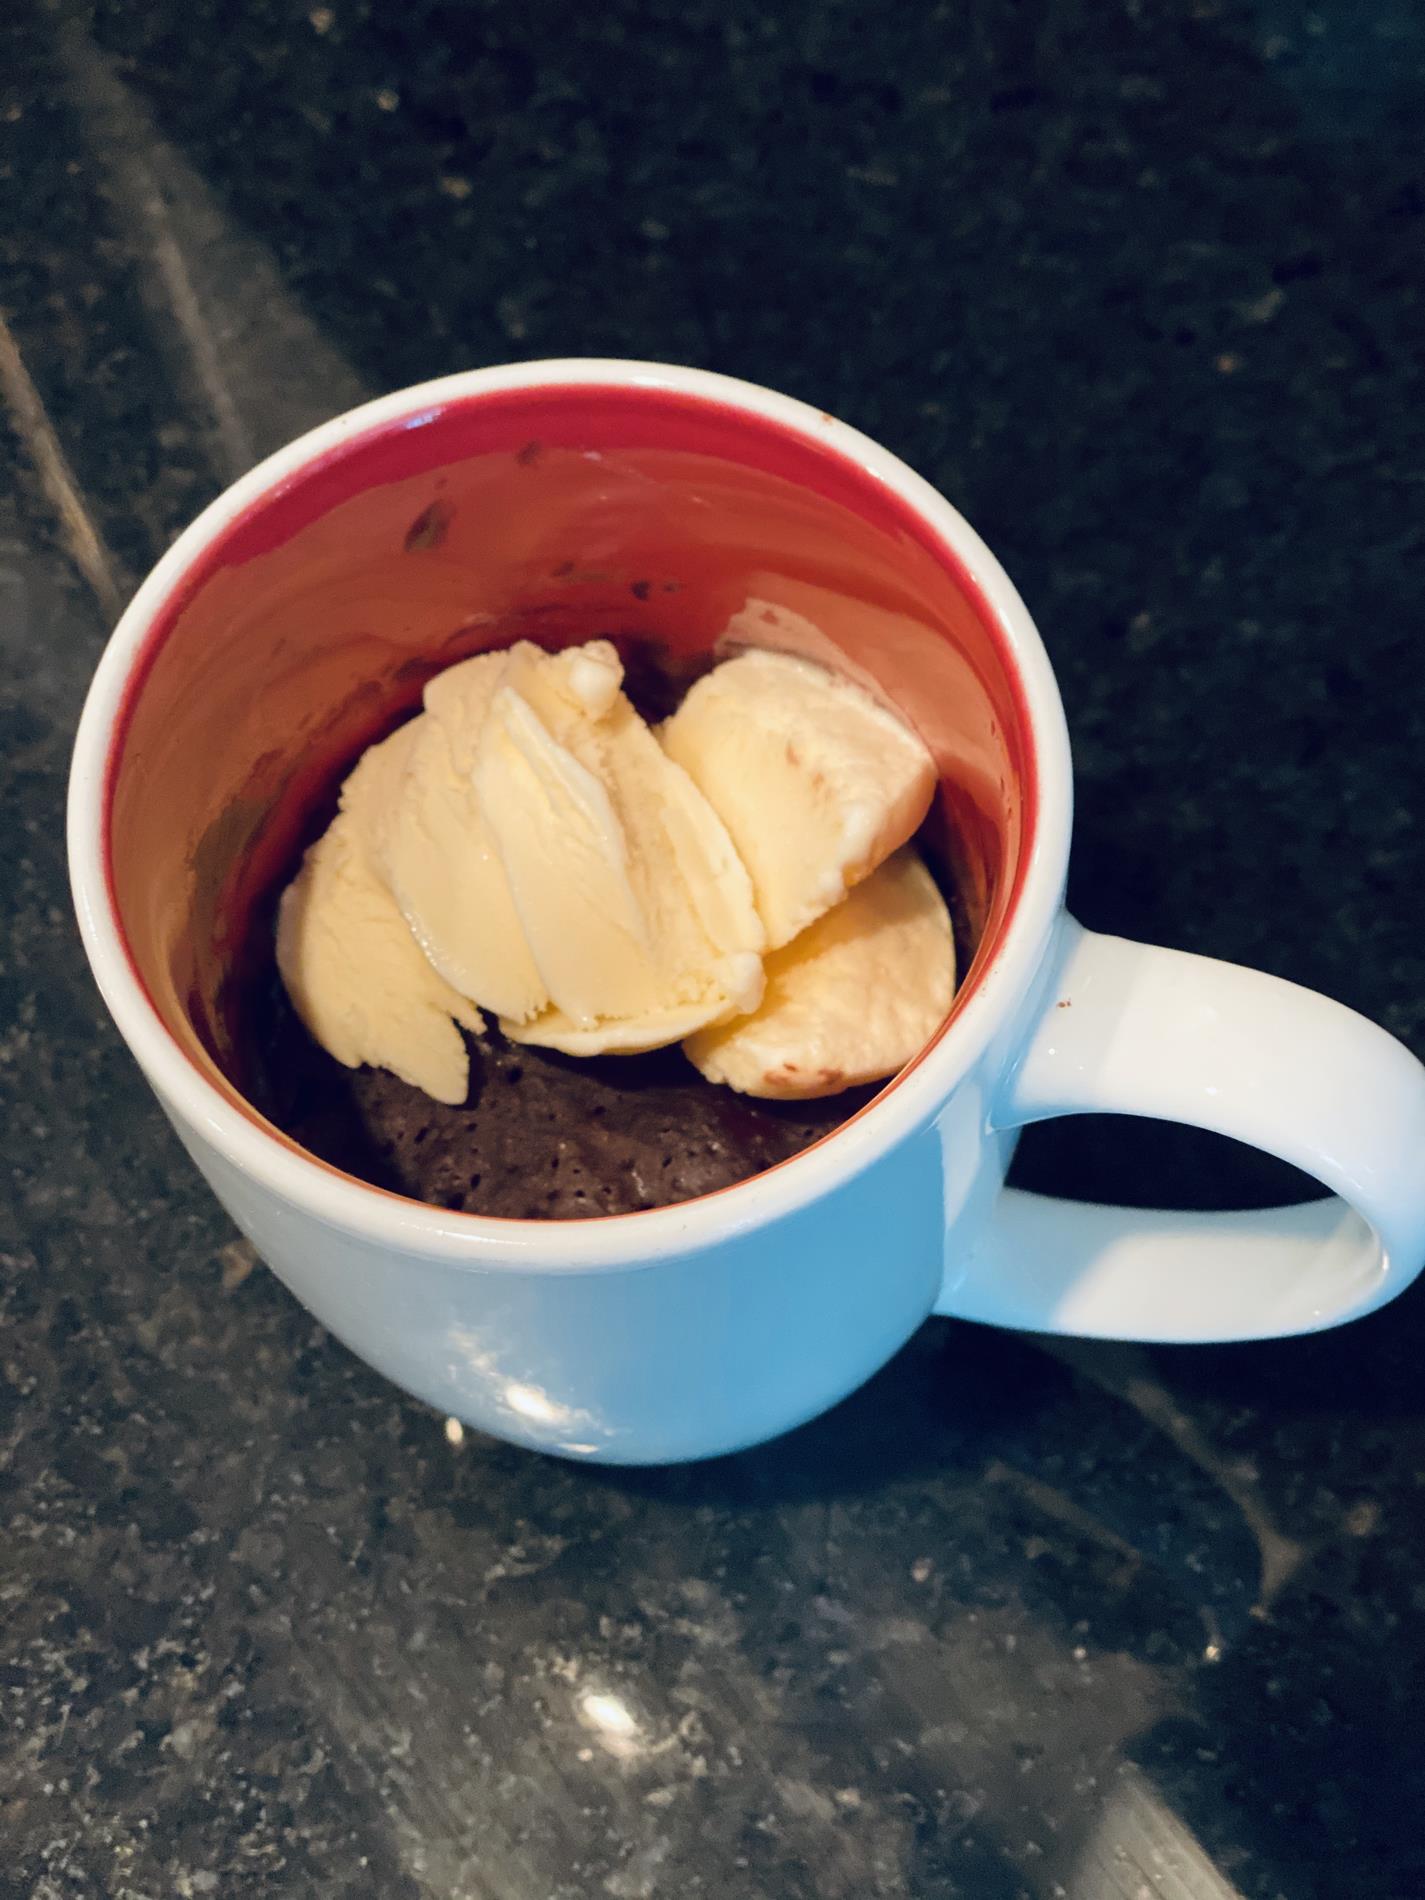 Food Science: Brownie in a Mug